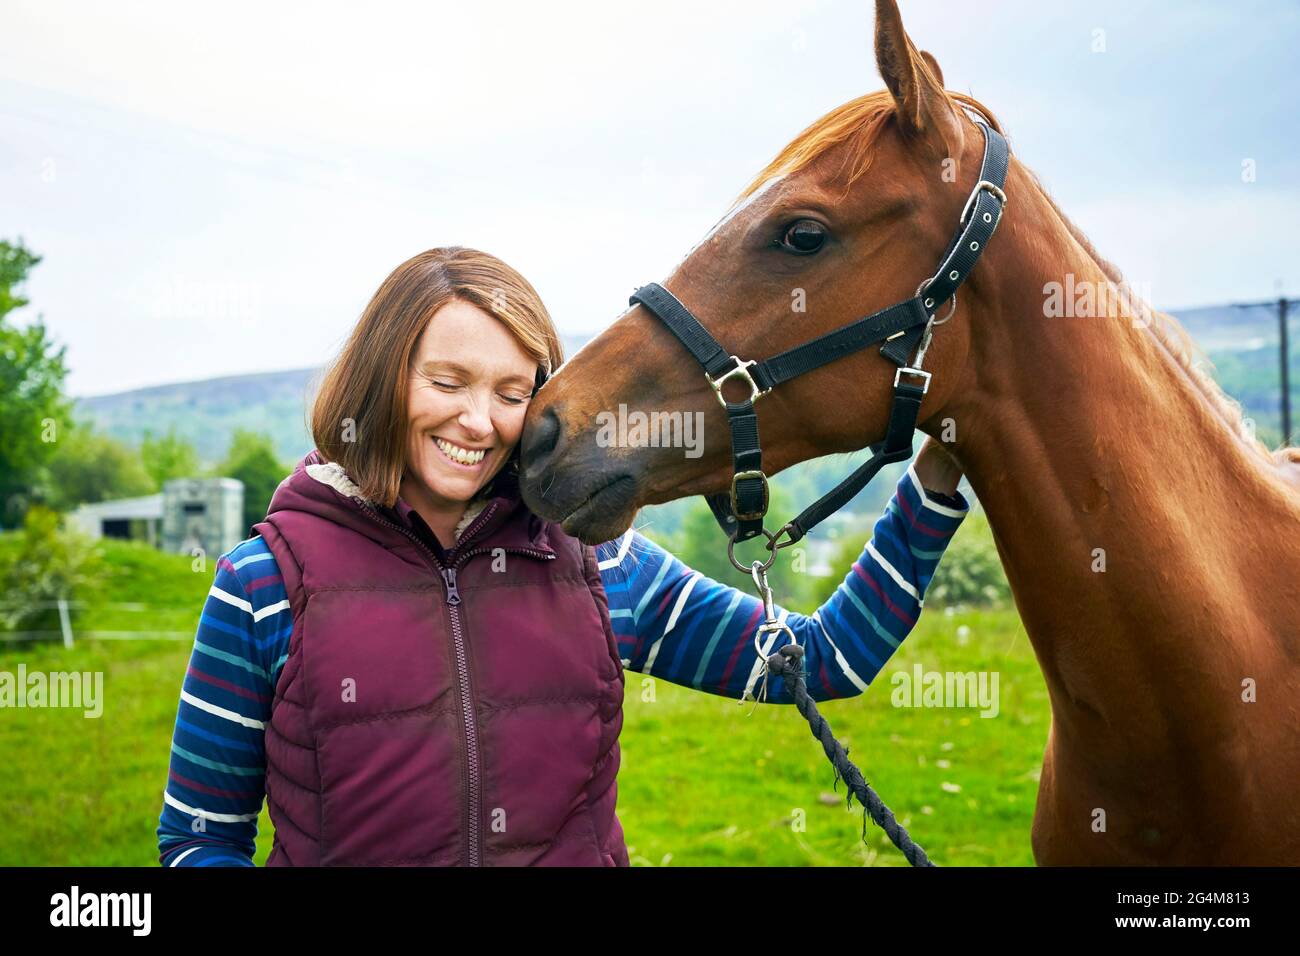 Dream Horse (2020) unter der Regie von Euros Lyn und mit Toni Collette als Jan Vokes, einem kleinen walisischen Barkeeper, der ein Rennpferd züchtet und trainiert, das das Welsh Grand National Steeplechase Pferderennen gewinnt. Stockfoto